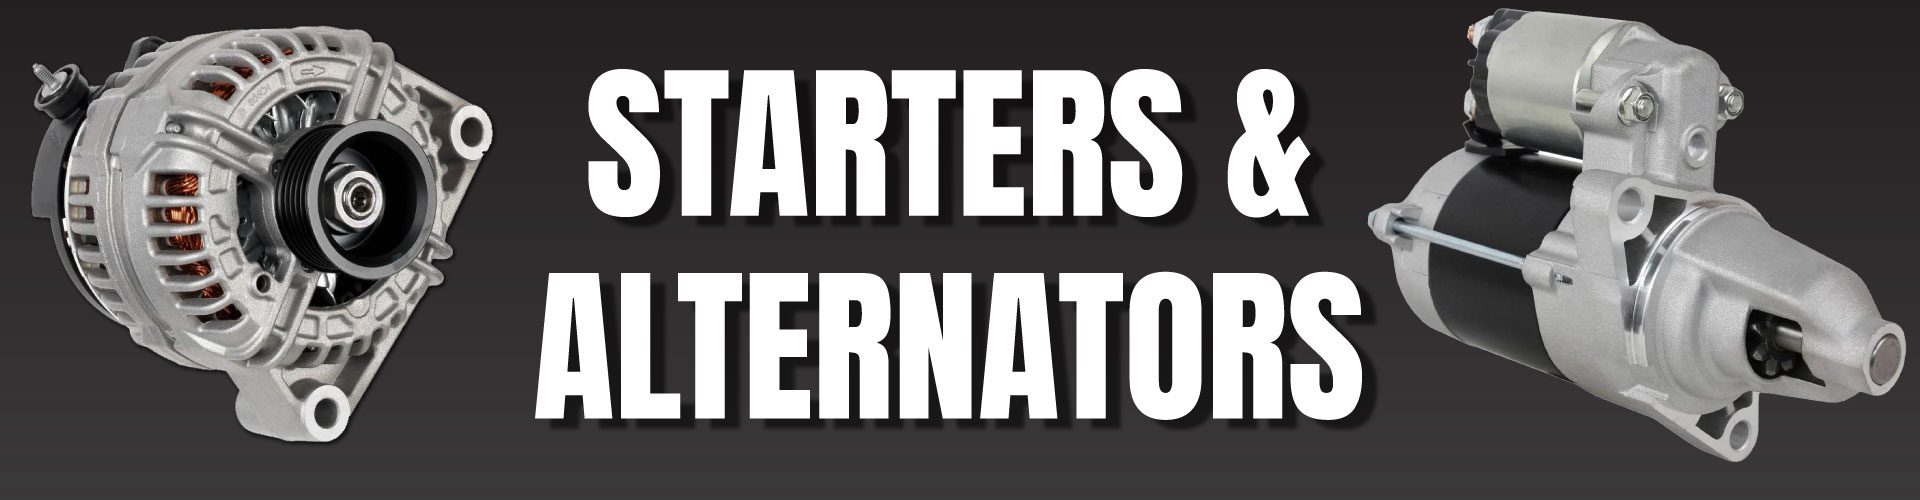 ALTERNATORS & STARTERS